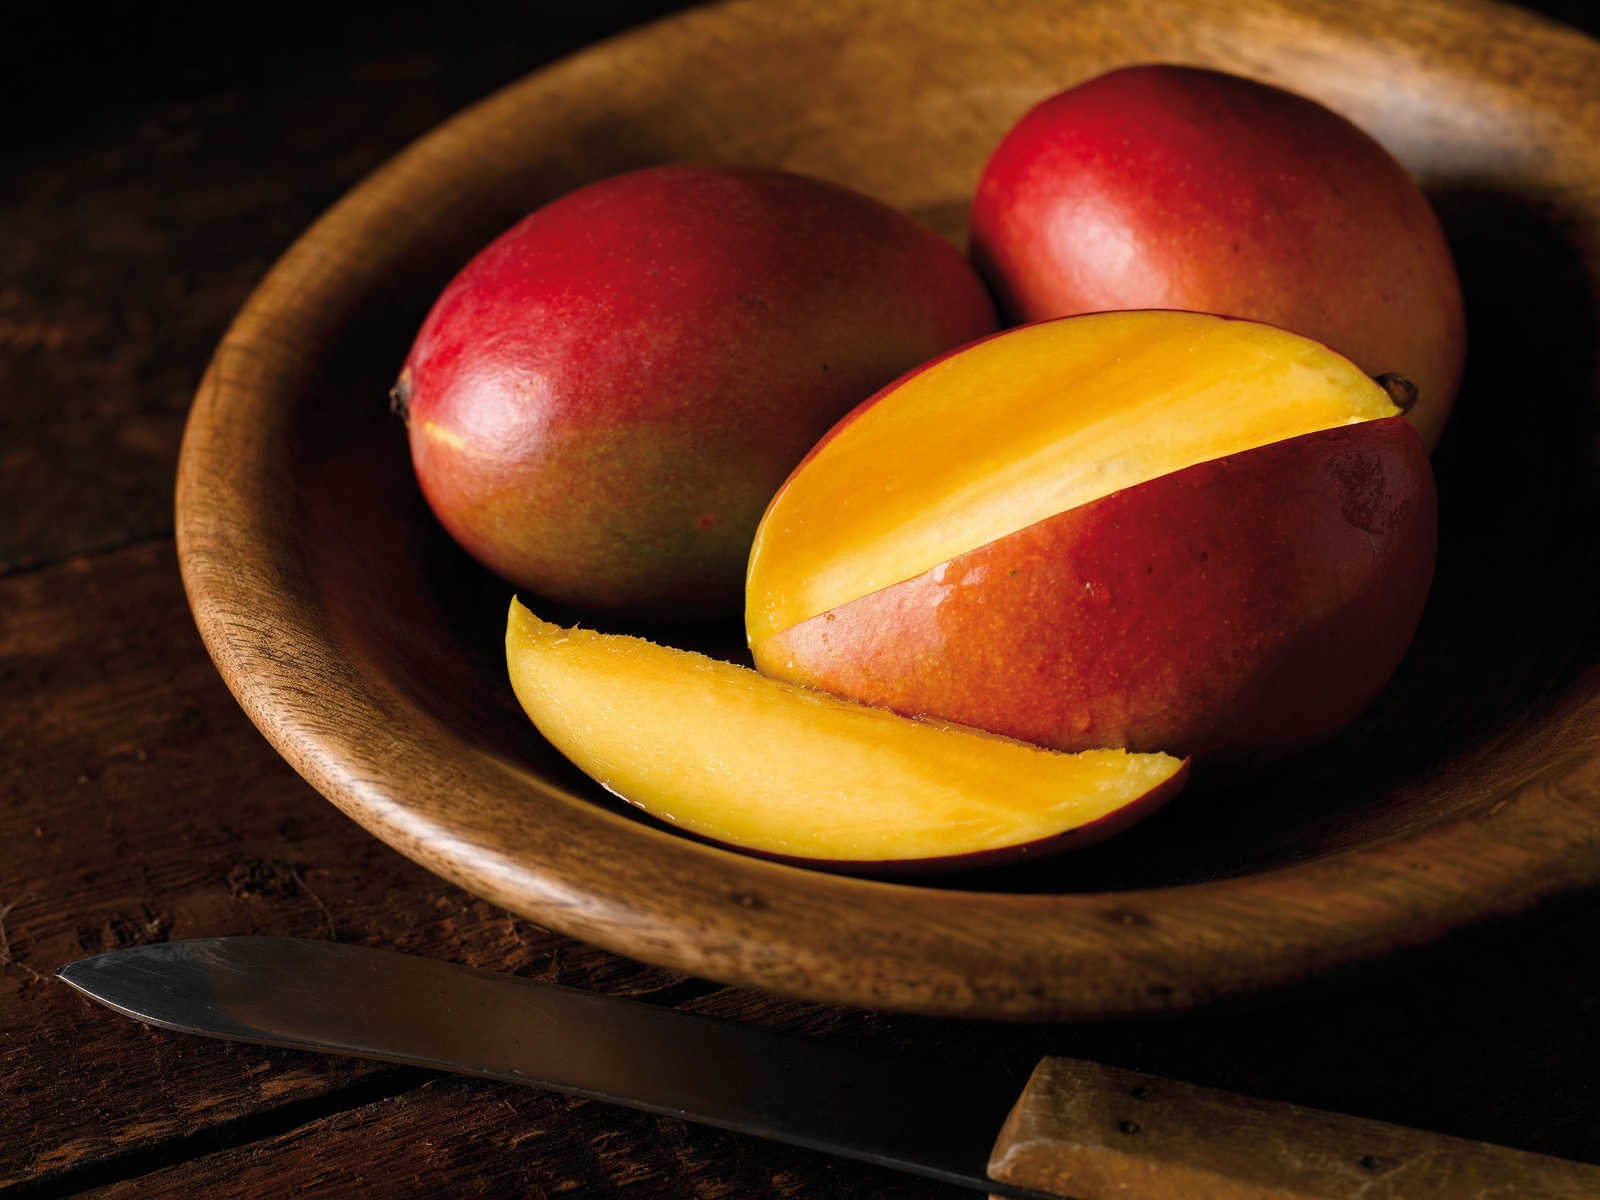             Mango Papaya Duftkerze mit fruchtigen Duft – 380g
        